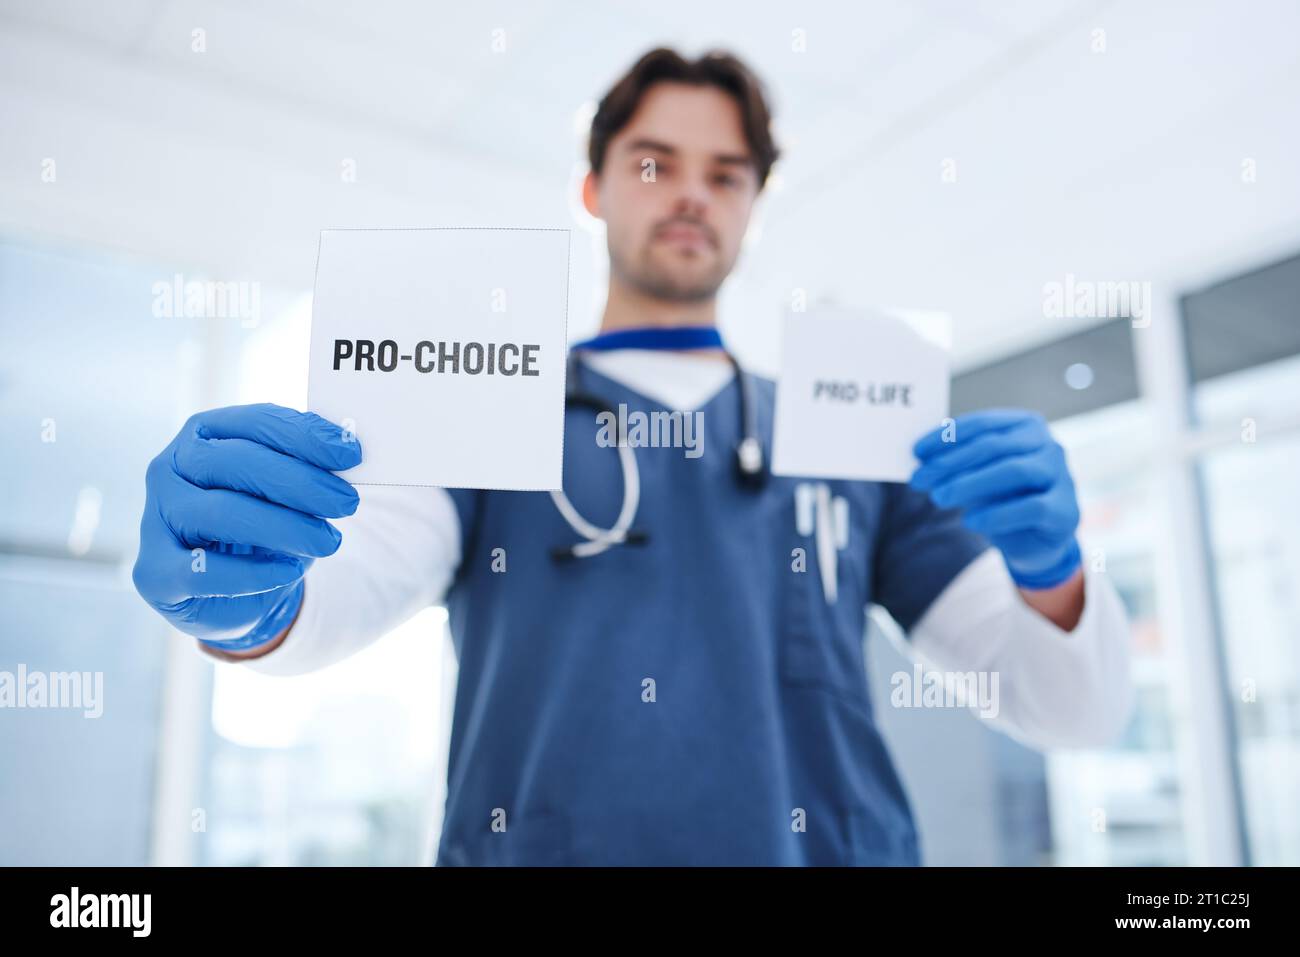 Abtreibung, Wahl und Arzt mit Papier in der Klinik für Menschenrechte auf Schwangerschaft, Gesundheit und Kontrolle des Körpers. Schwester, Entscheidung und Poster mit Stockfoto